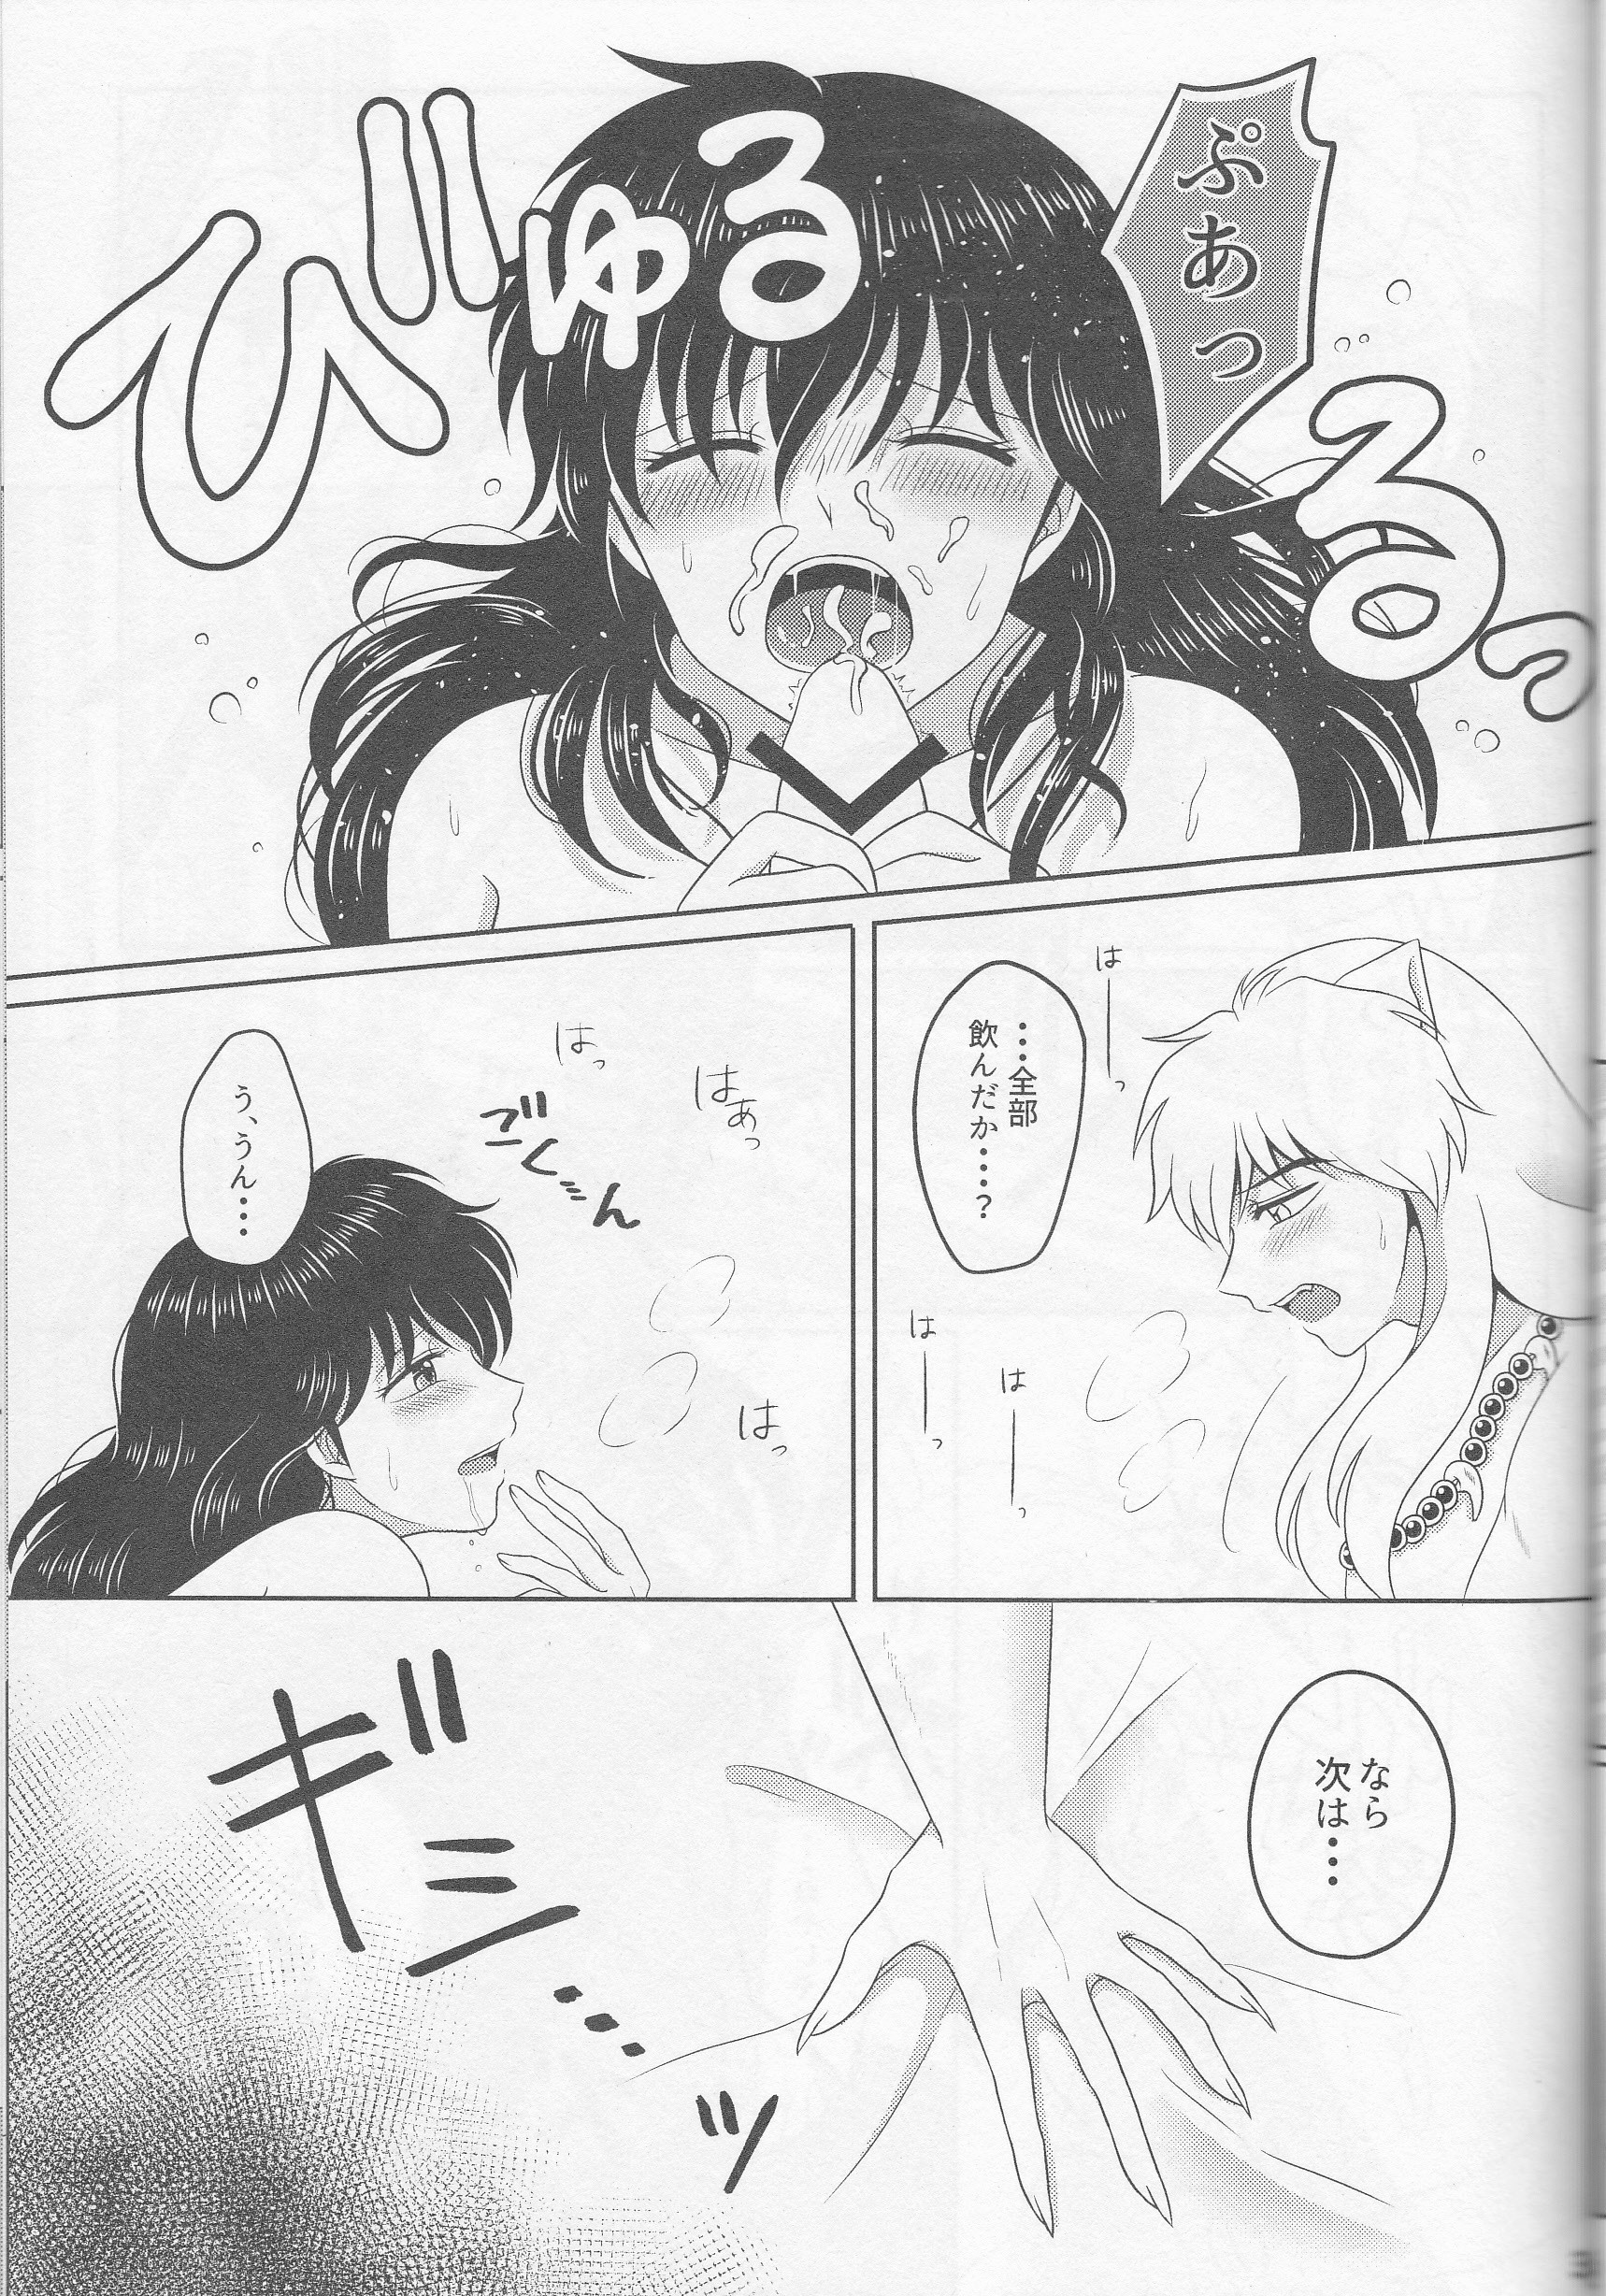 Koi Gusuri - Love drug hentai manga picture 30